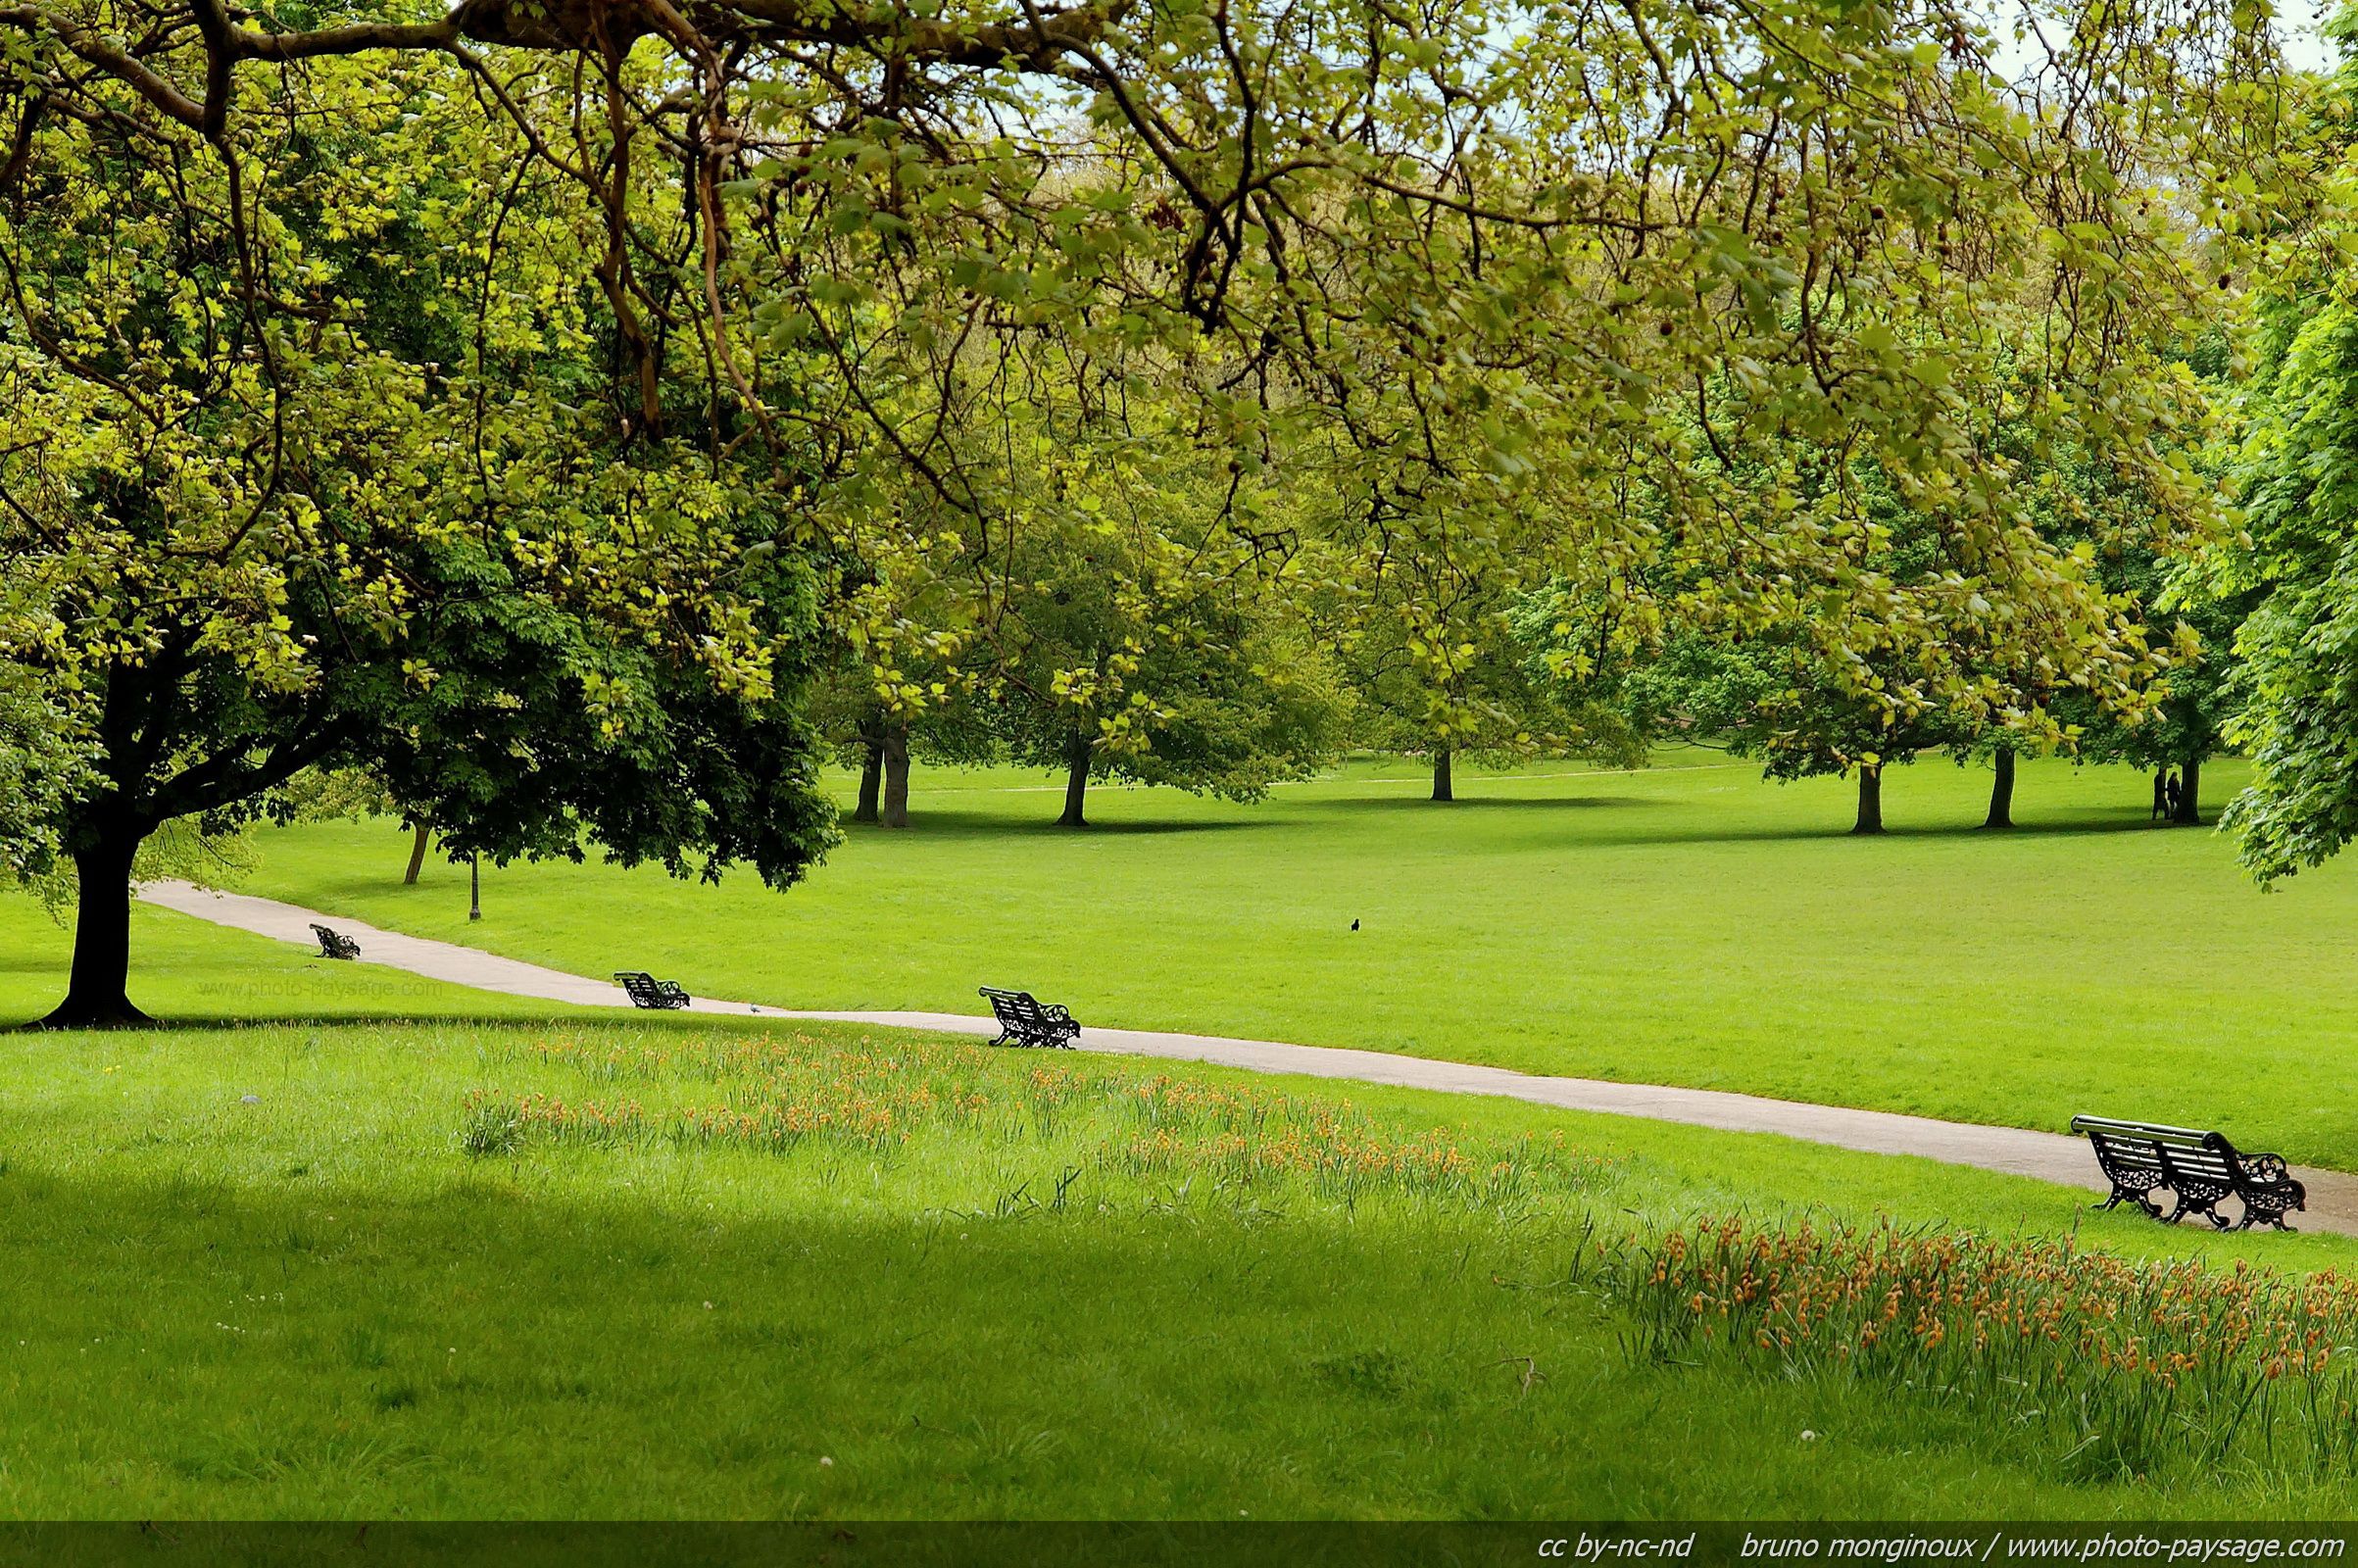 Best HD Walls of Green Park, HD Widescreen Green Park Wallpaper